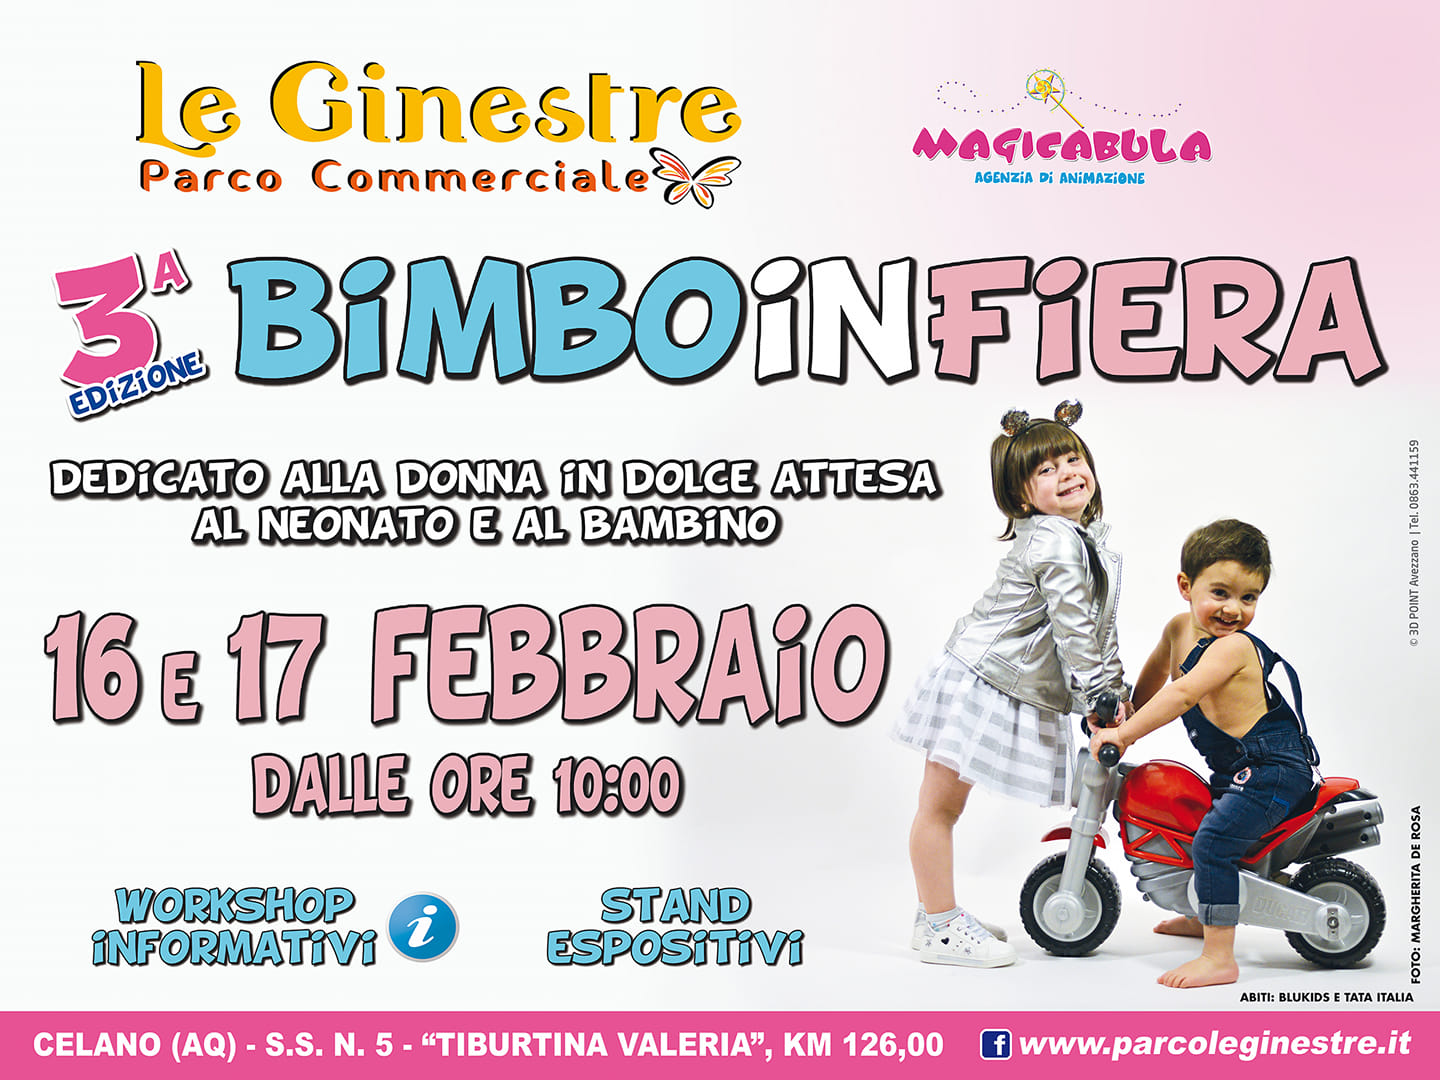 Terza edizione di "Bimbo in Fiera" evento dedicato alla donna in dolceattesa, al neonato e al bambino